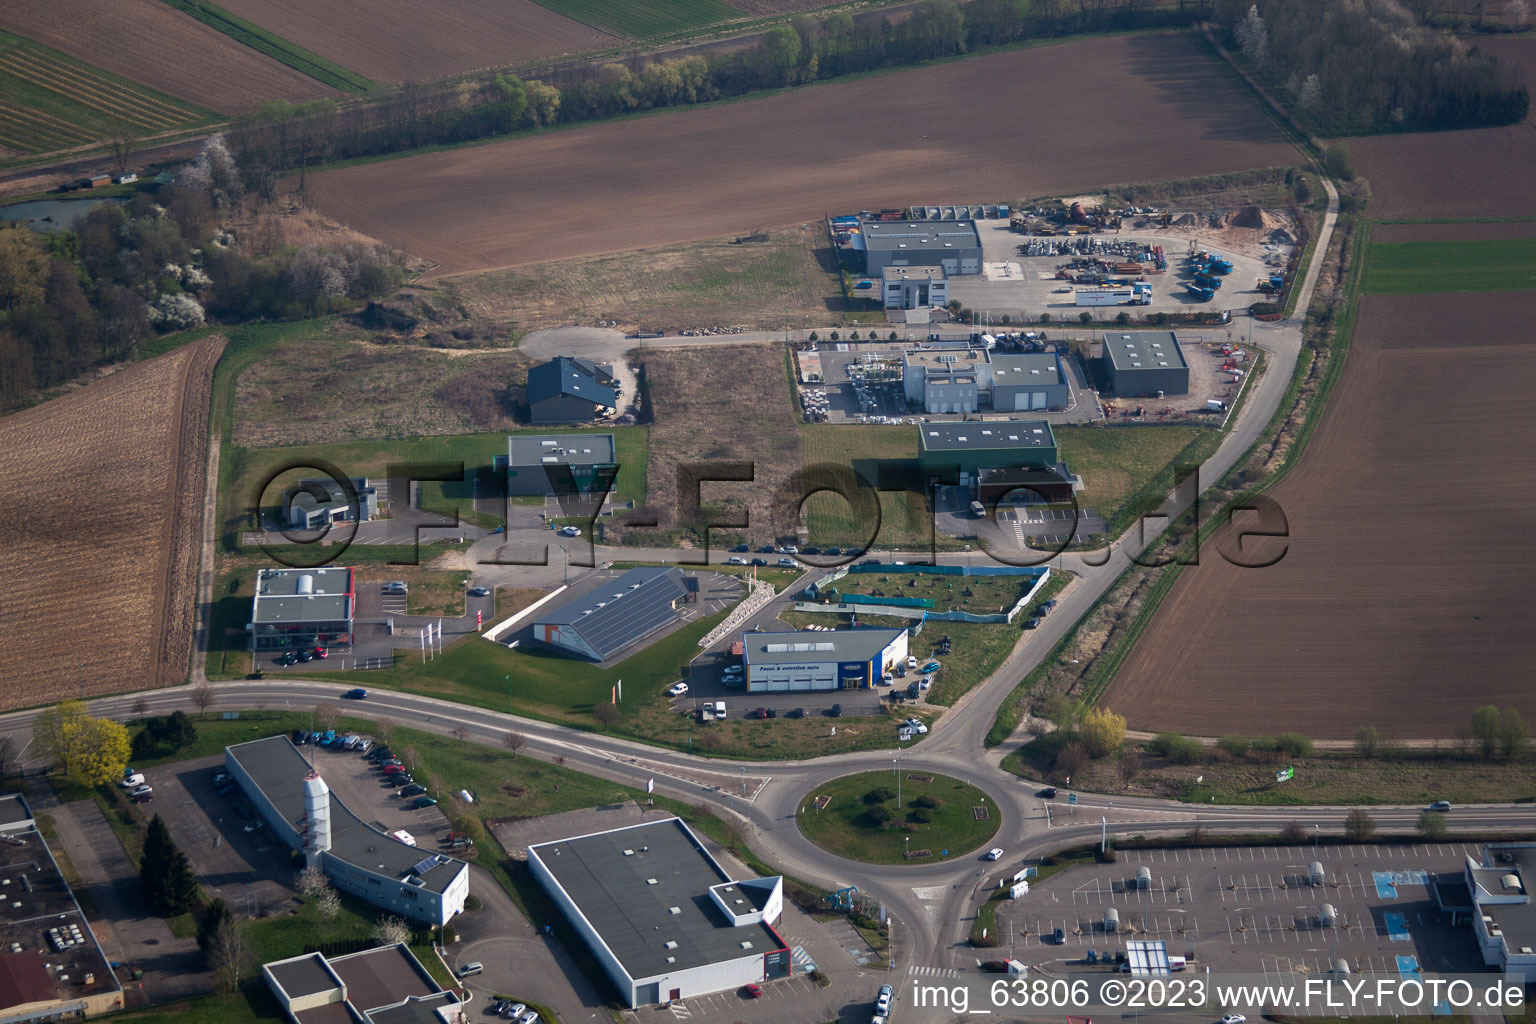 Reimerswiller im Bundesland Bas-Rhin, Frankreich aus der Luft betrachtet